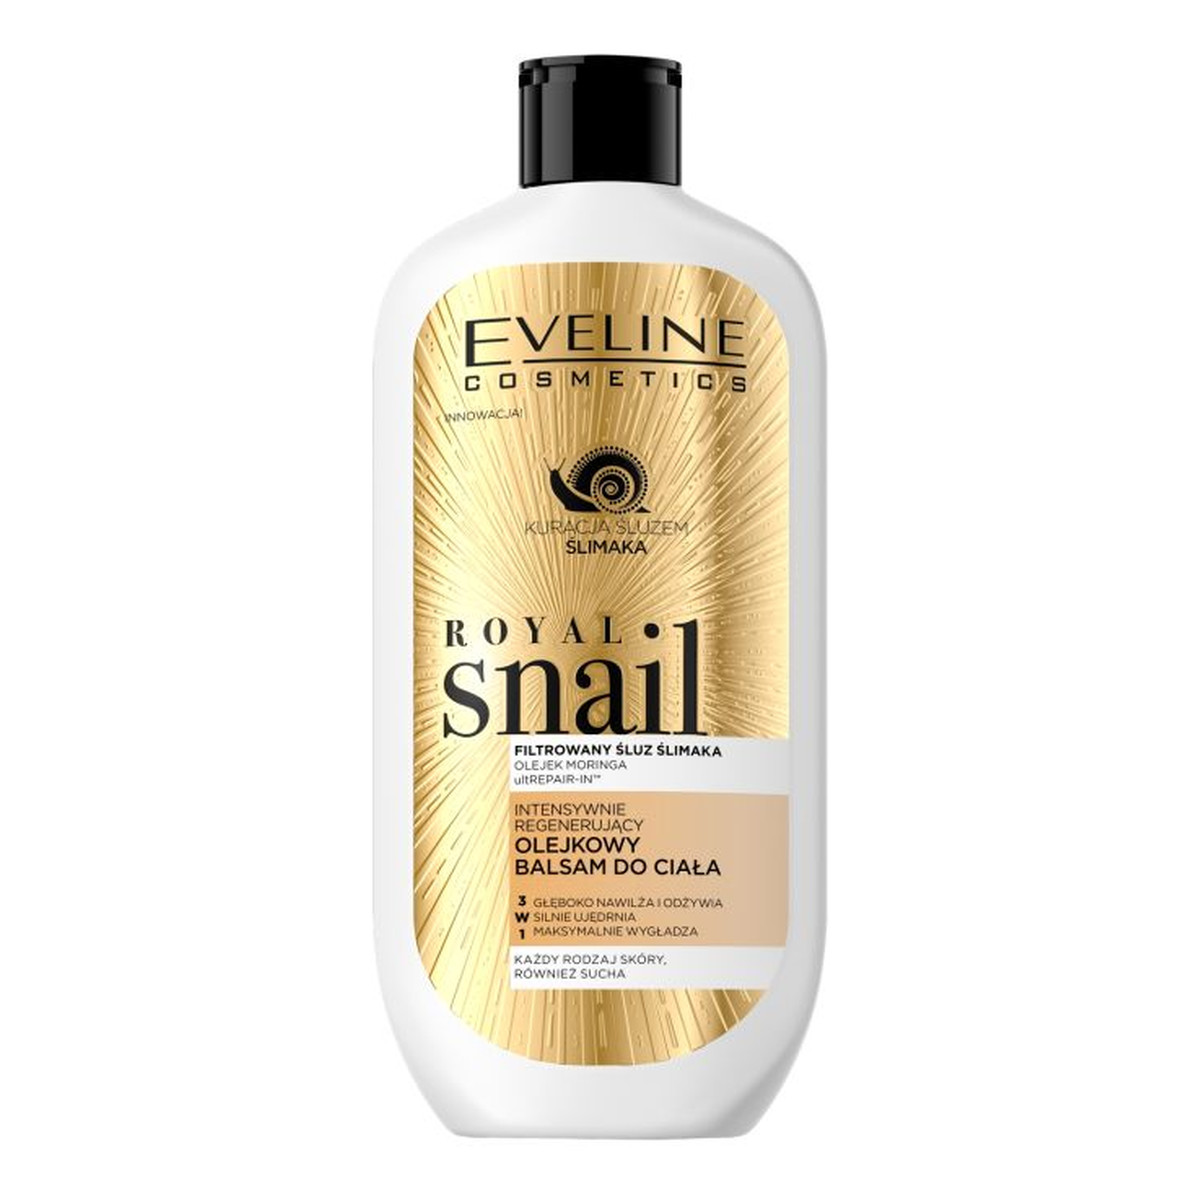 Eveline Royal Snail intensywnie regenerujący olejkowy balsam do ciała 350ml